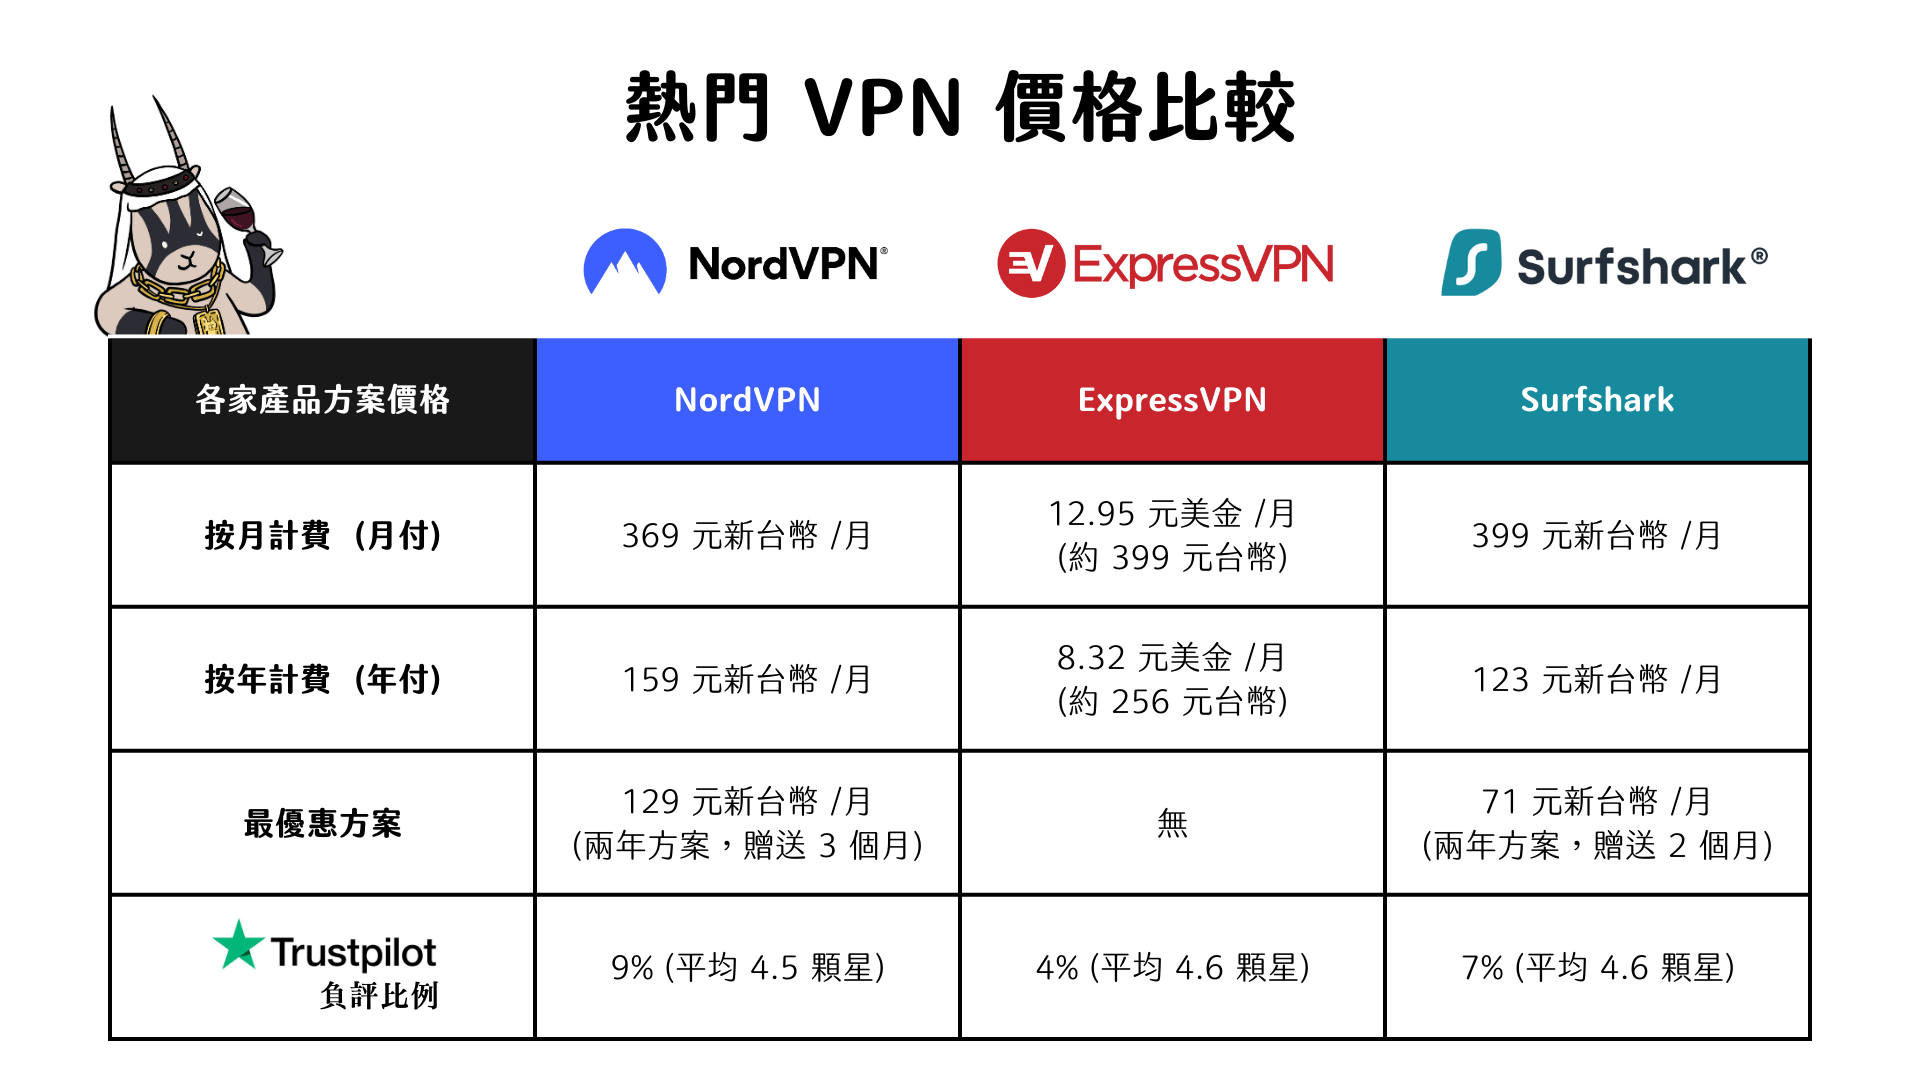 團隊每年都會就 VPN (翻牆) 軟體的價格、連線品質及市場評價給大家最完整的推薦解析，如果懶得閱讀完整分析，以下幫大家根據價格以及用戶評論製作簡易表格 - Nord VPN, ExpressVPN, SurfShark VPN